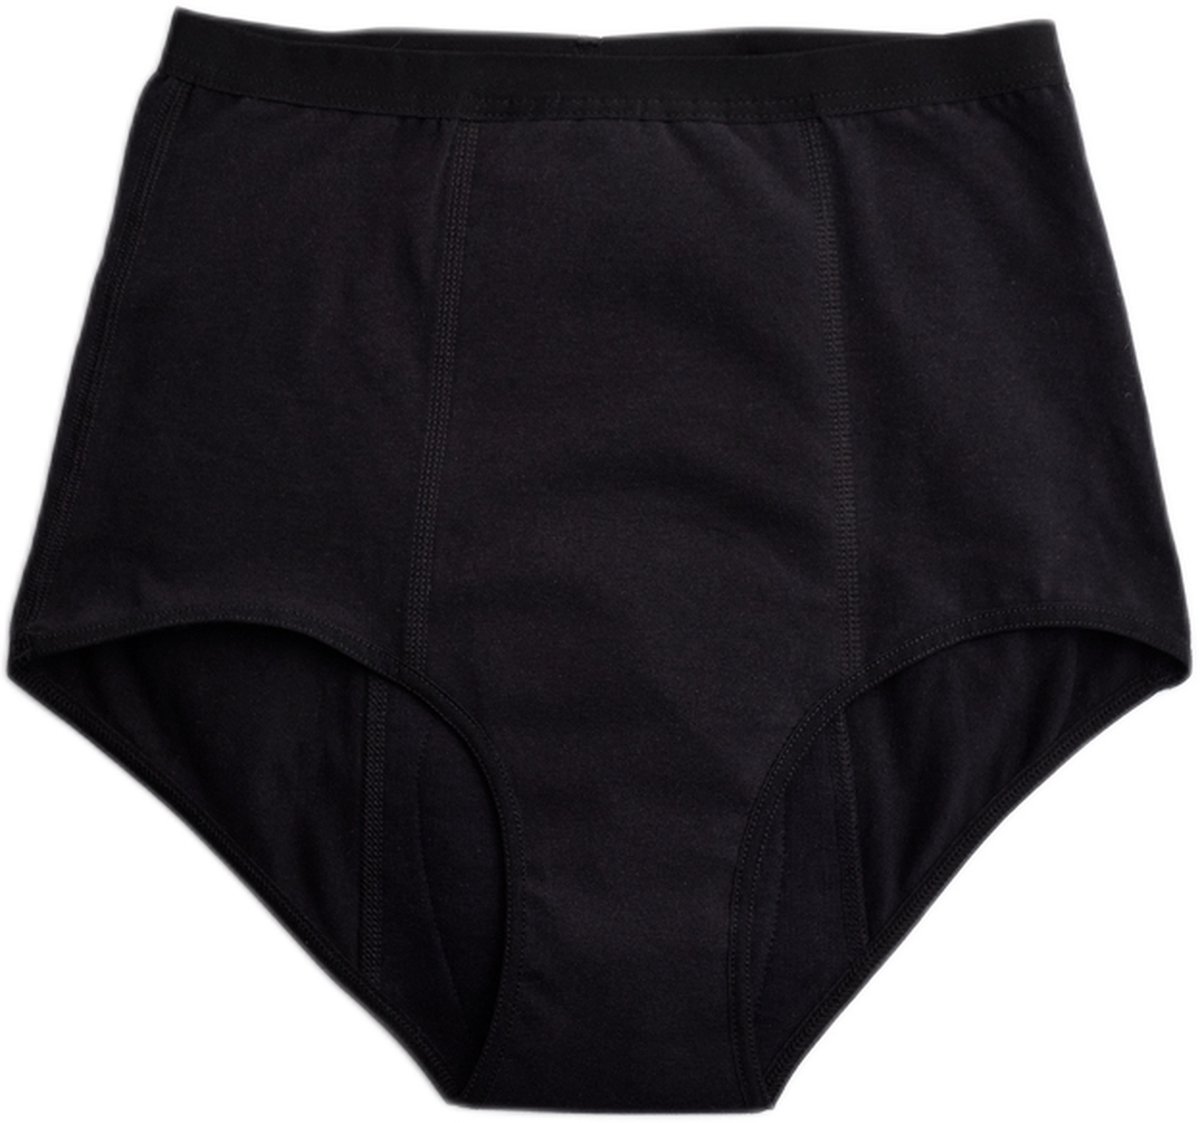 ImseVimse - Imse - menstruatieondergoed - High Waist period underwear - hevige menstruatie / medium flow - XS - eur 34 - zwart